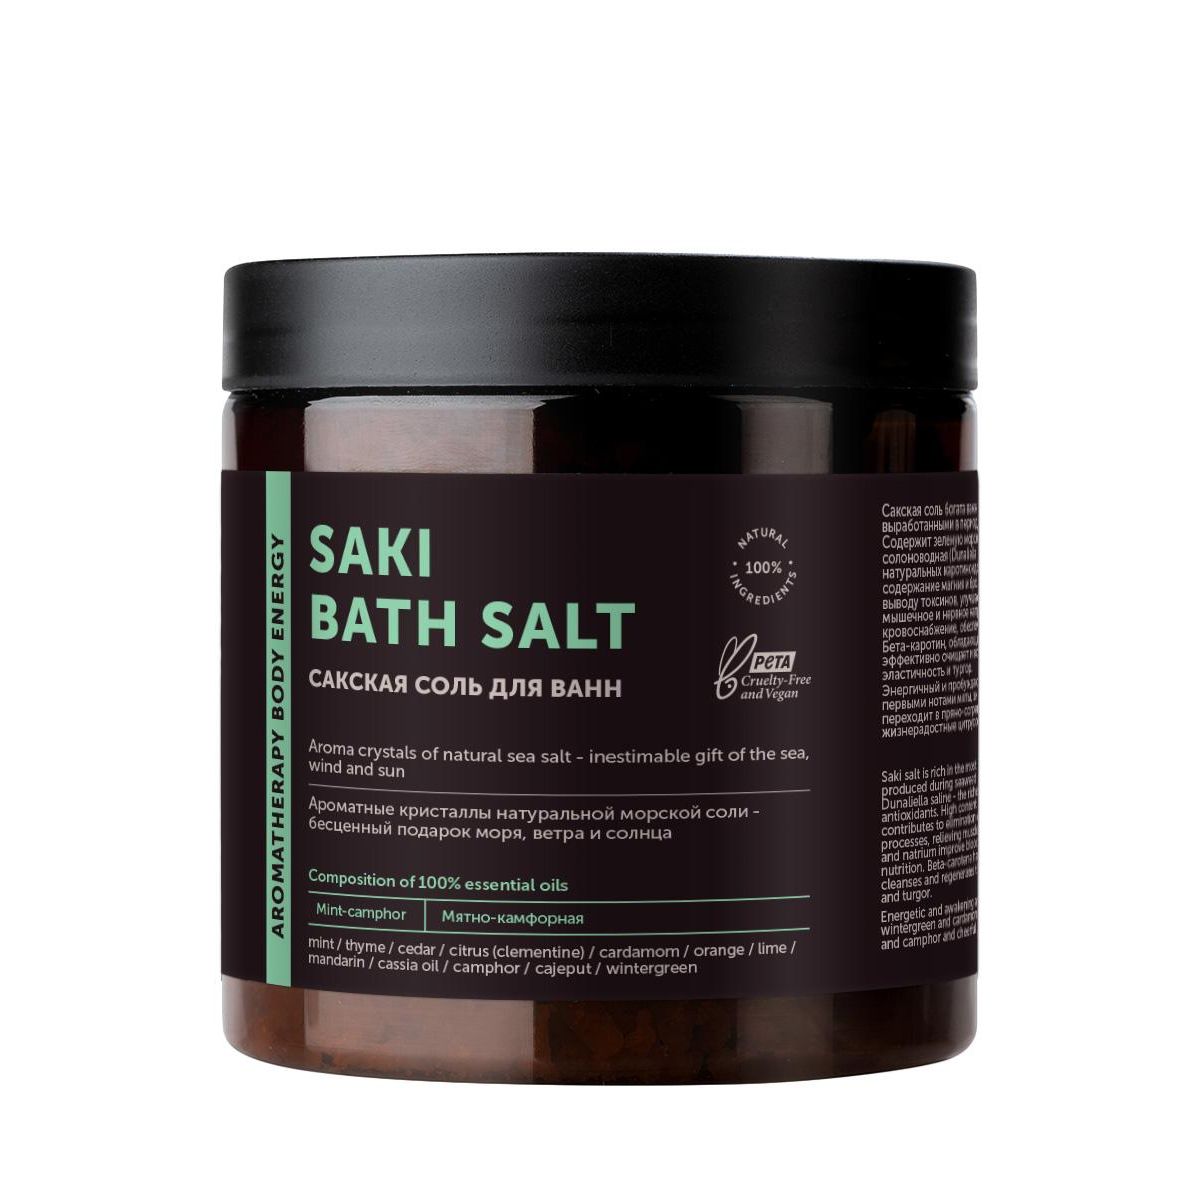 Соль для ванн Botavikos Aromatherapy Body Energy Сакская, 650 г соль для ванны botavikos сакская aromatherapy body energy 650г